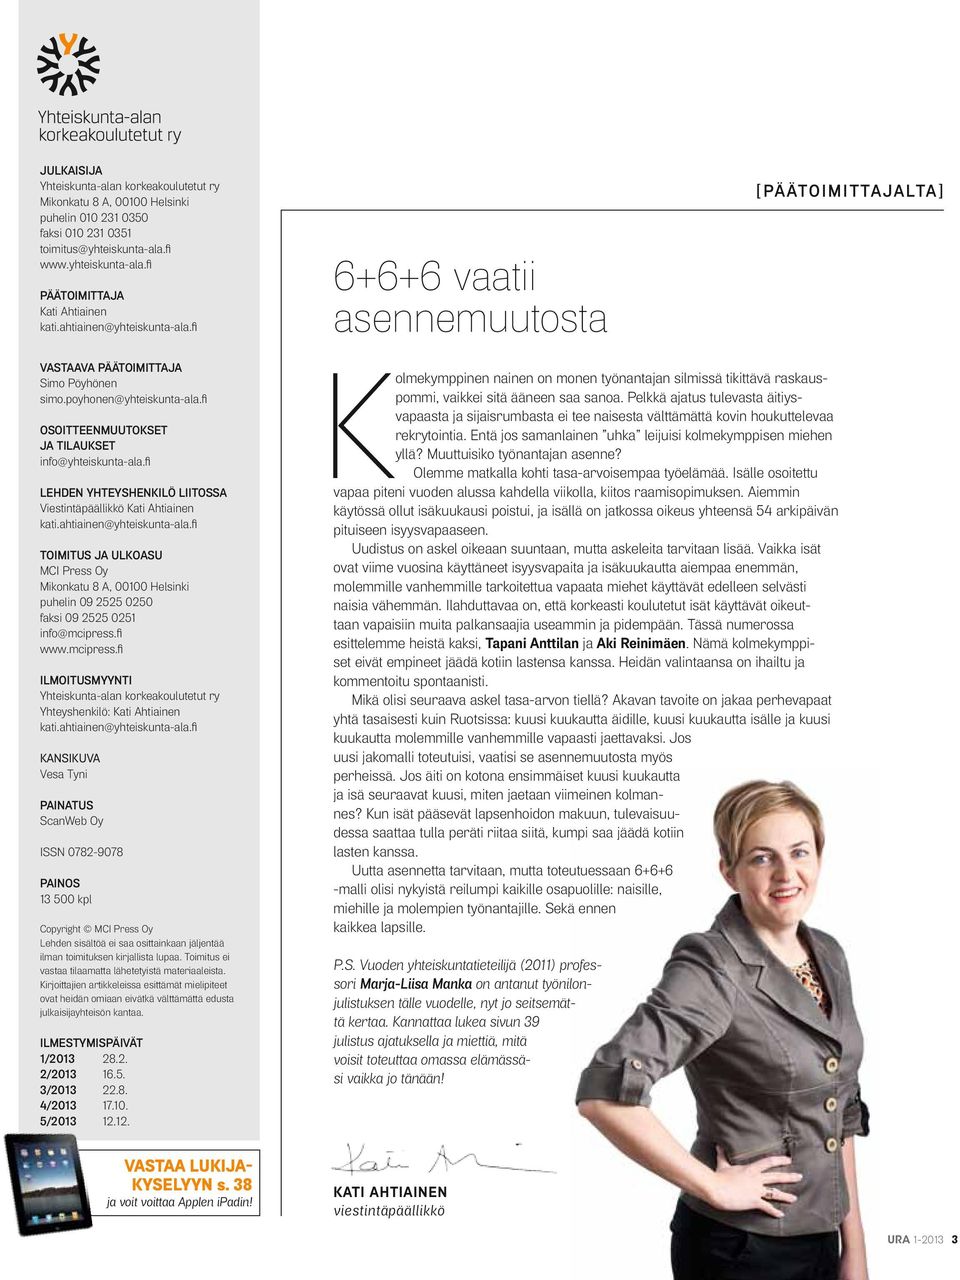 fi Lehden yhteyshenkilö liitossa Viestintäpäällikkö Kati Ahtiainen kati.ahtiainen@yhteiskunta-ala.